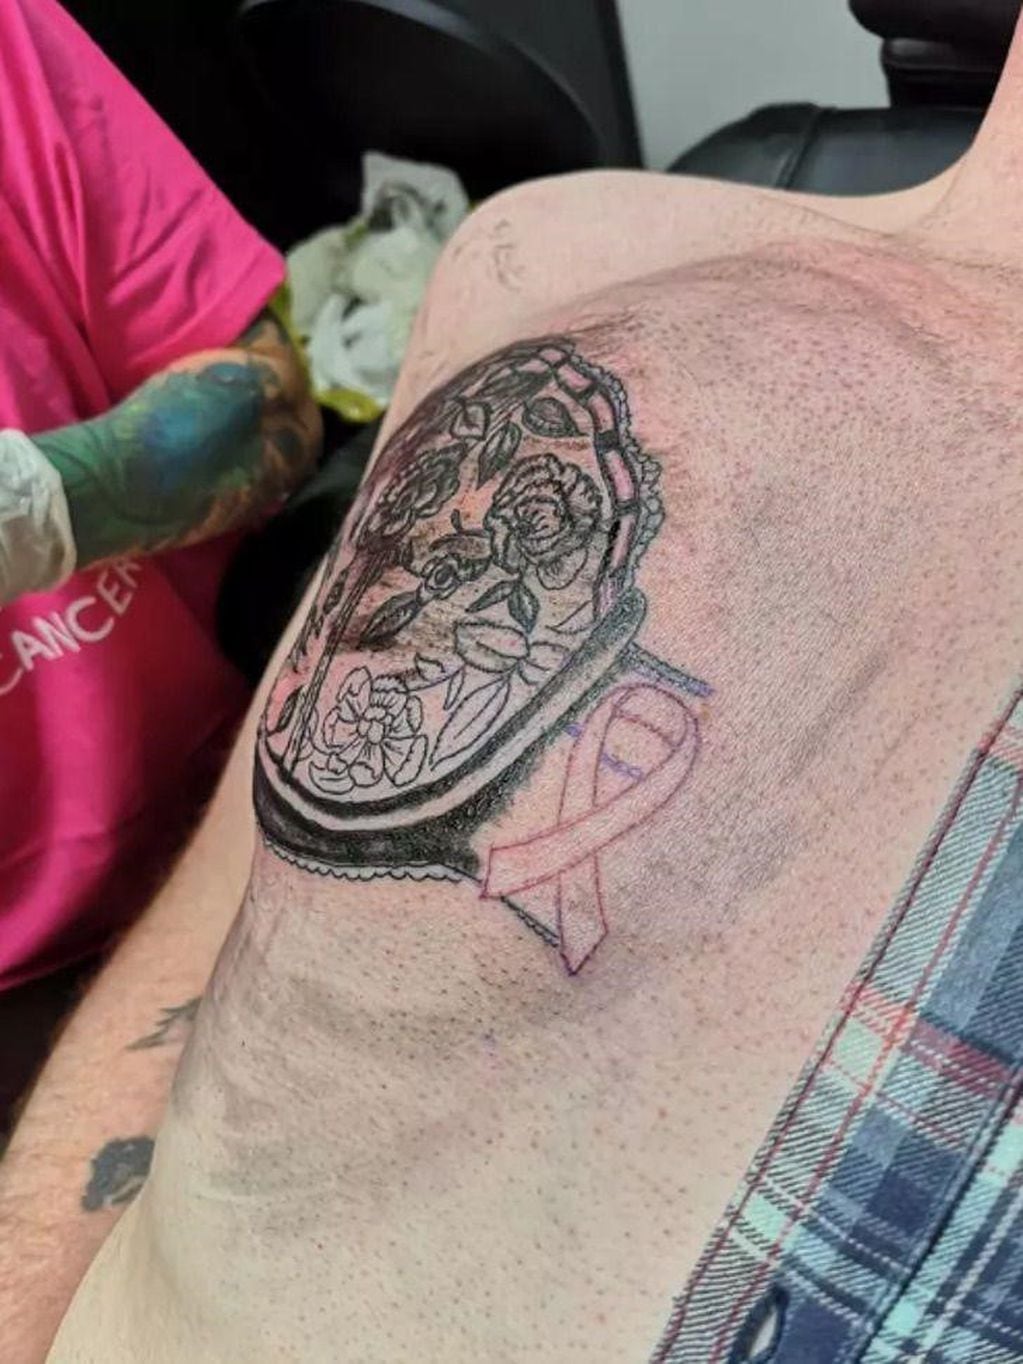 El hombre sufrió la muerte de su mamá por cáncer de mamá y se tatuó cerca del aniversario de su fallecimiento.